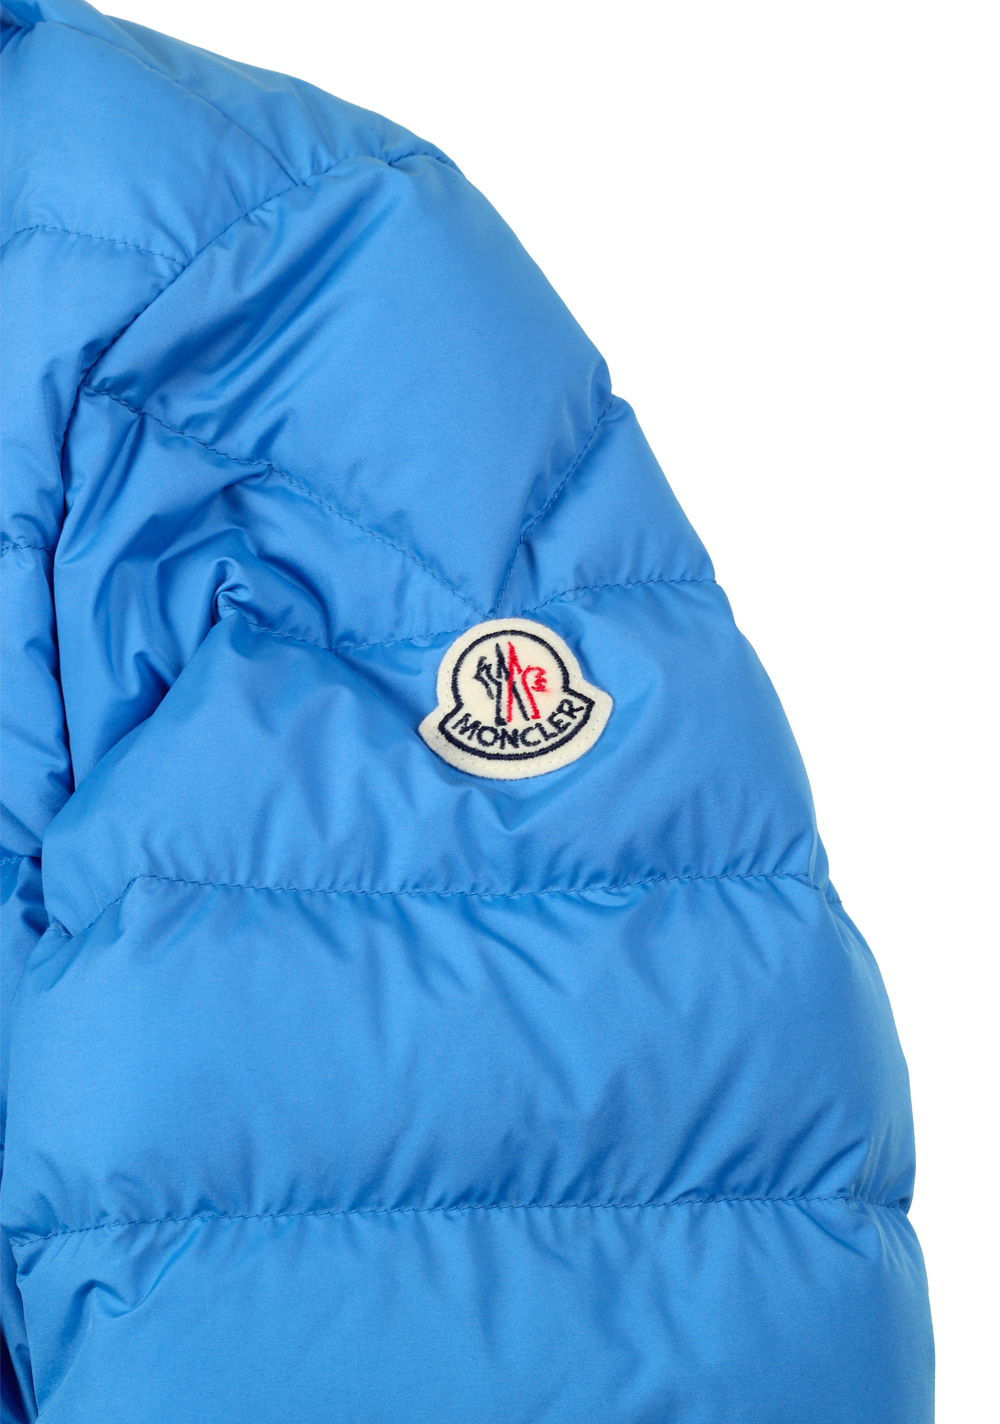 Moncler Blue CYCLOPE Quilted Down Jacket Coat Size 4 / L / 52 / 42 U.S. | Costume Limité